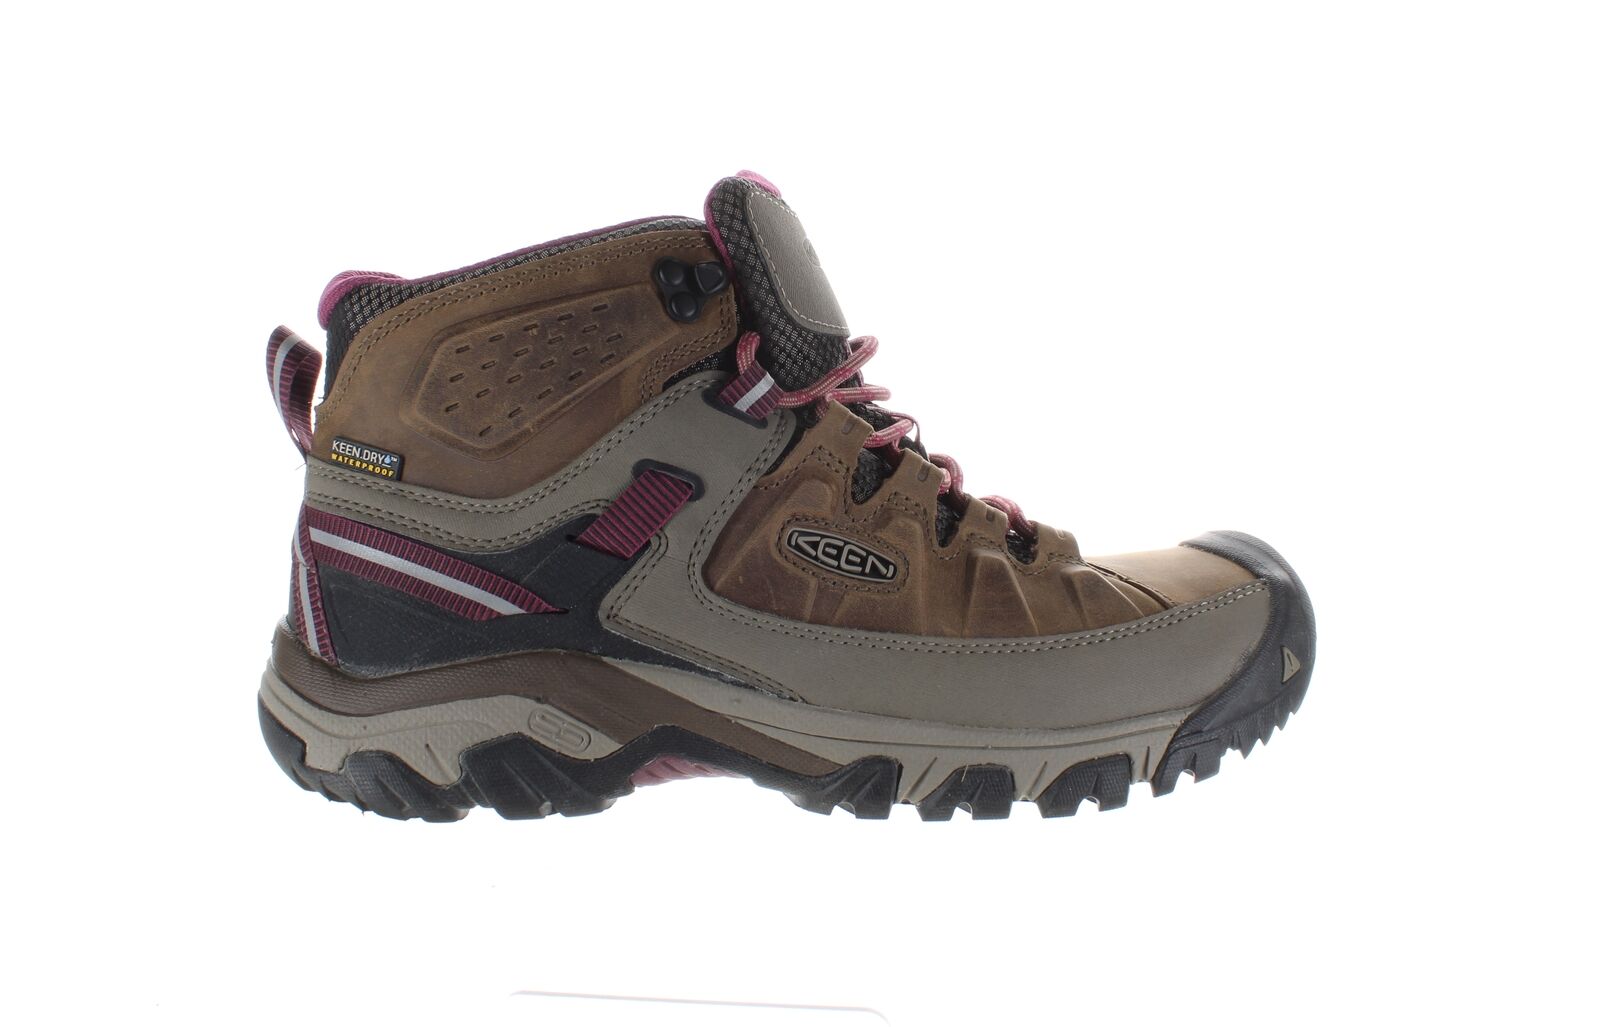 KEEN Womens Targhee 3 Weiss/Boysenberry Hiking Boots Size 10.5 (2218095)